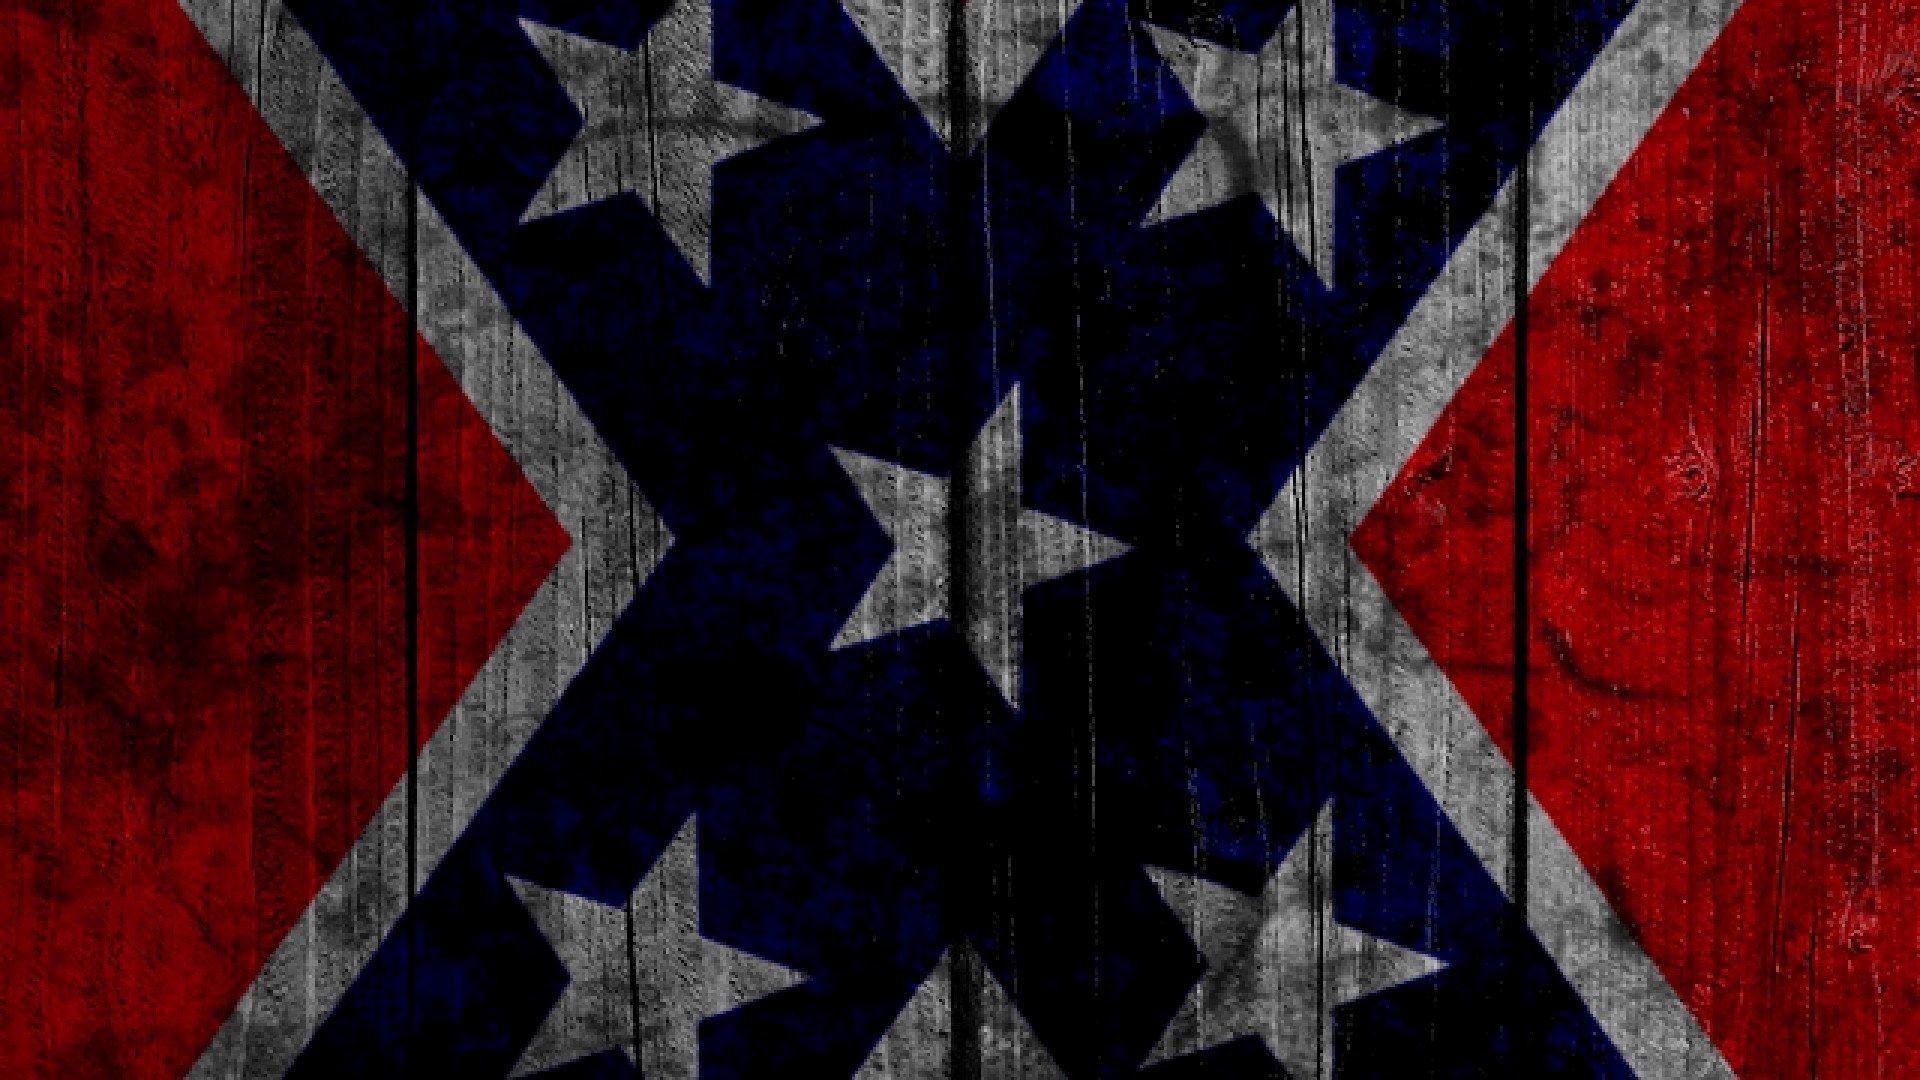 49+] Free Confederate Flag Wallpaper - WallpaperSafari